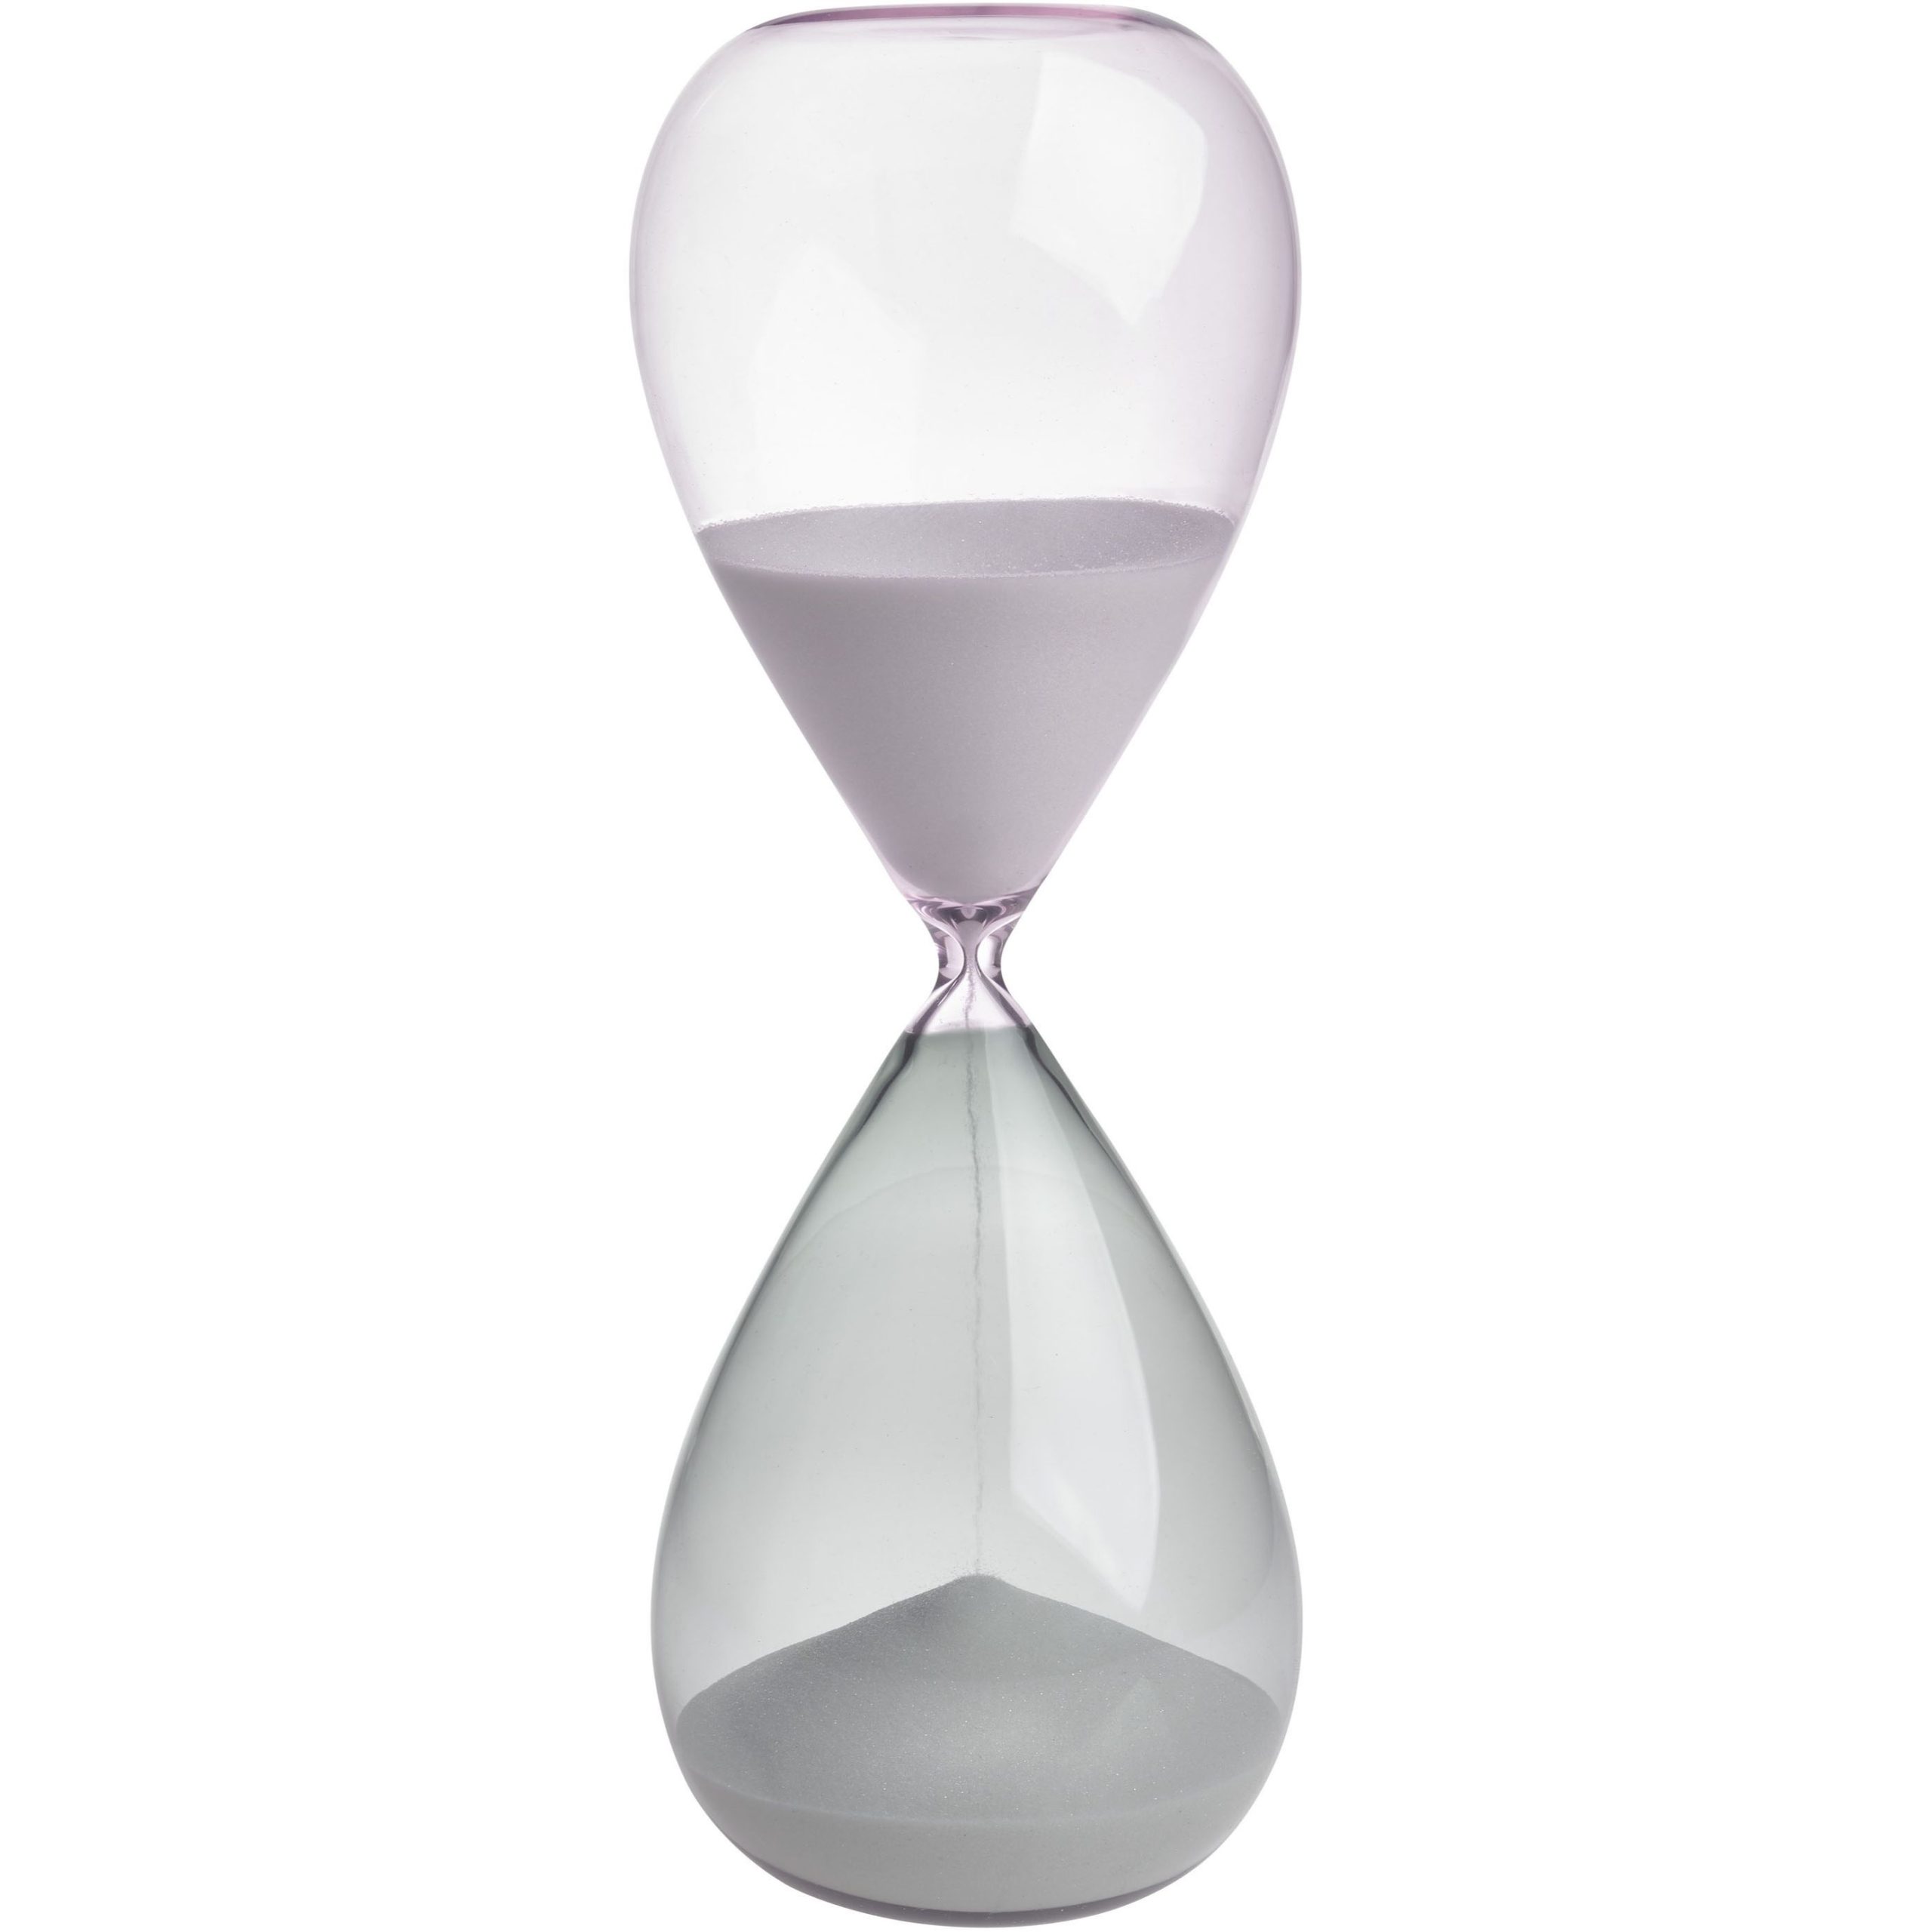 Песочные часы TFA (1860090240), 15 минут, таймер, белый песок, серо-розовое стекло, 19 x 7.3 см